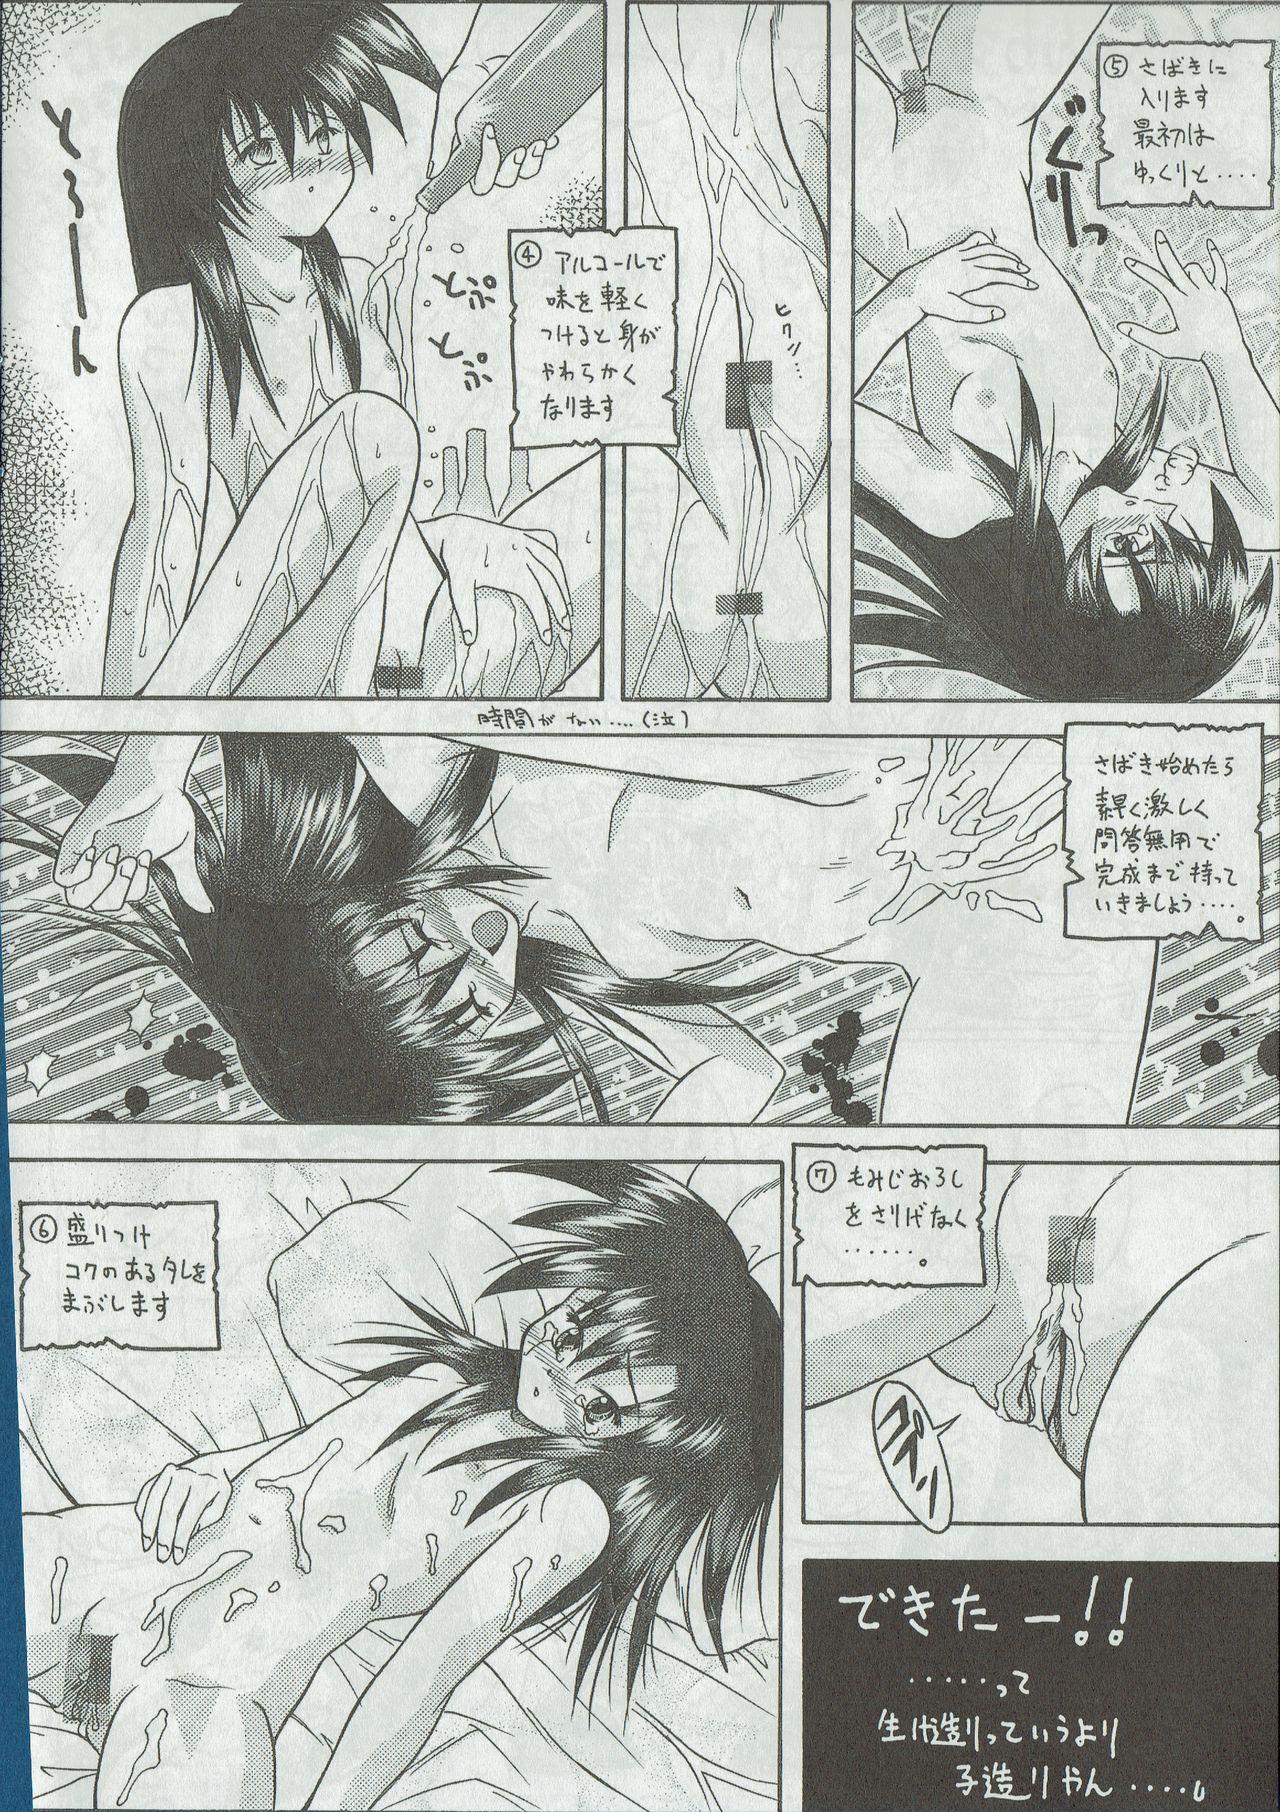 Arisu no Denchi Bakudan Vol. 01 20